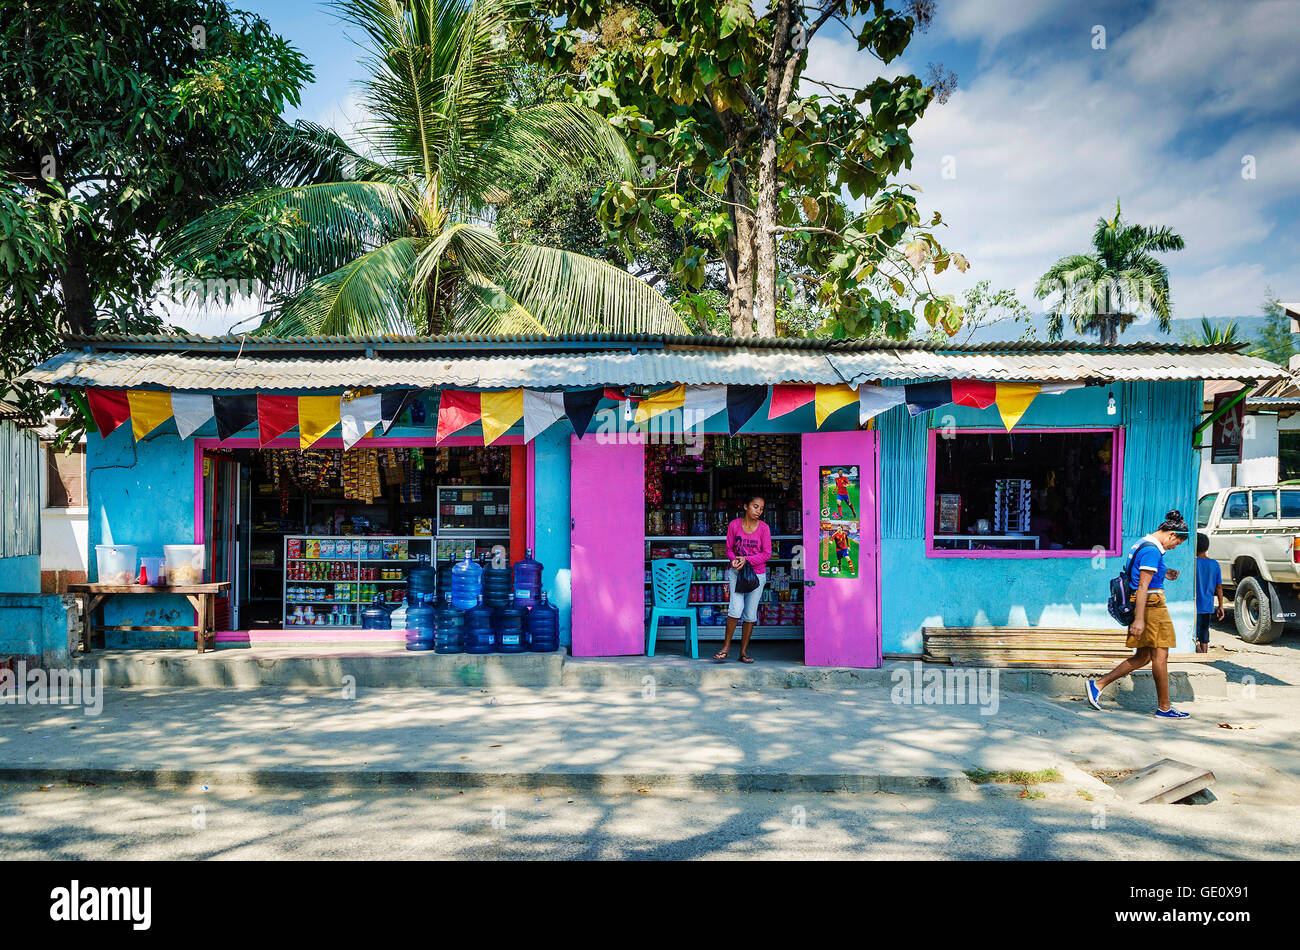 Colorful épicerie dans la rue centrale de Dili au Timor oriental Asie Banque D'Images